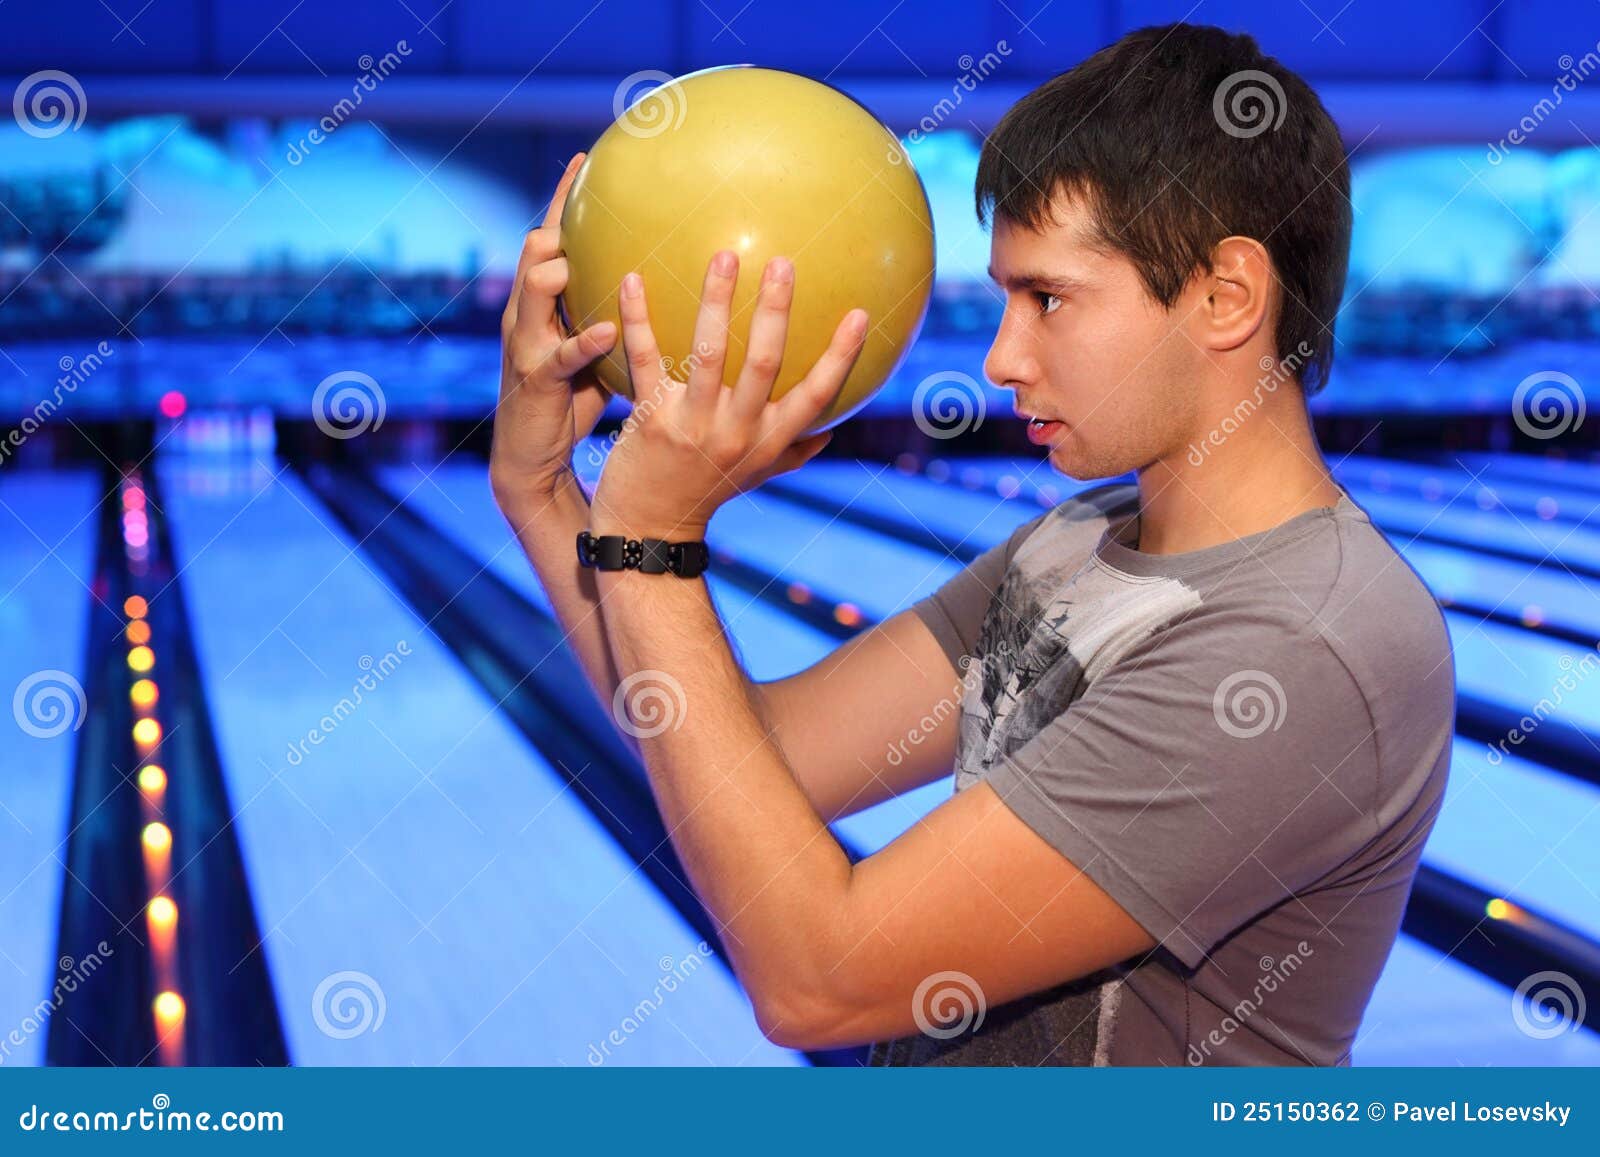 Бросание шаров. Шар для боулинга. Человек с шаром для боулинга. Мужчина с шаром для боулинга. Фотосессия боулинг мужская.